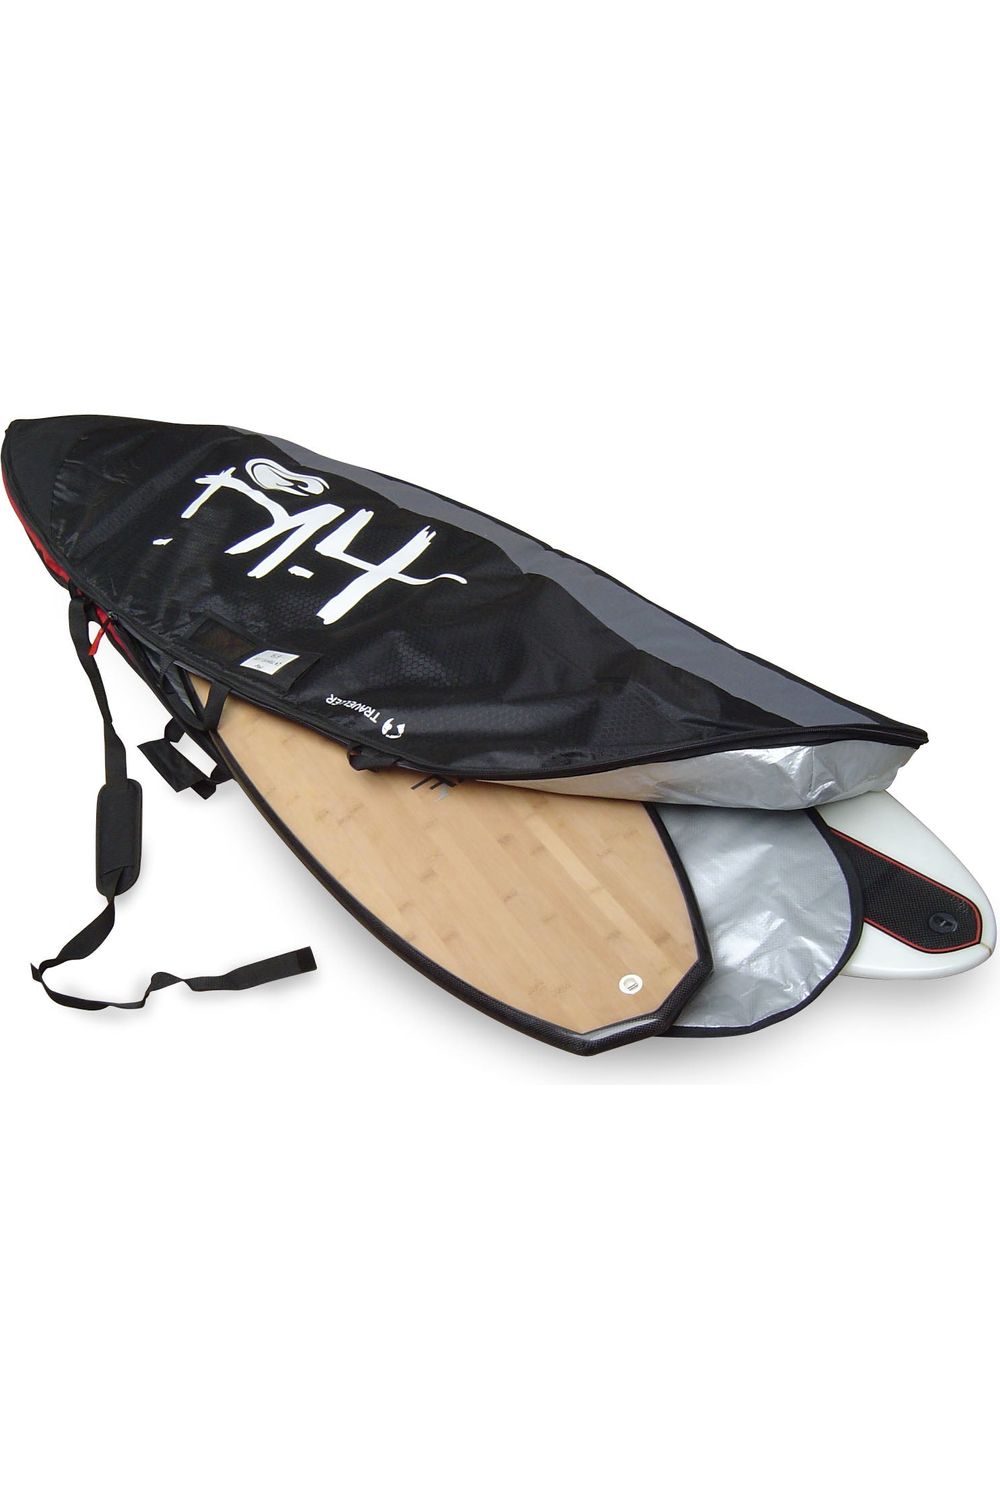 9'9 Travel Mal Surfboard Bag MKII